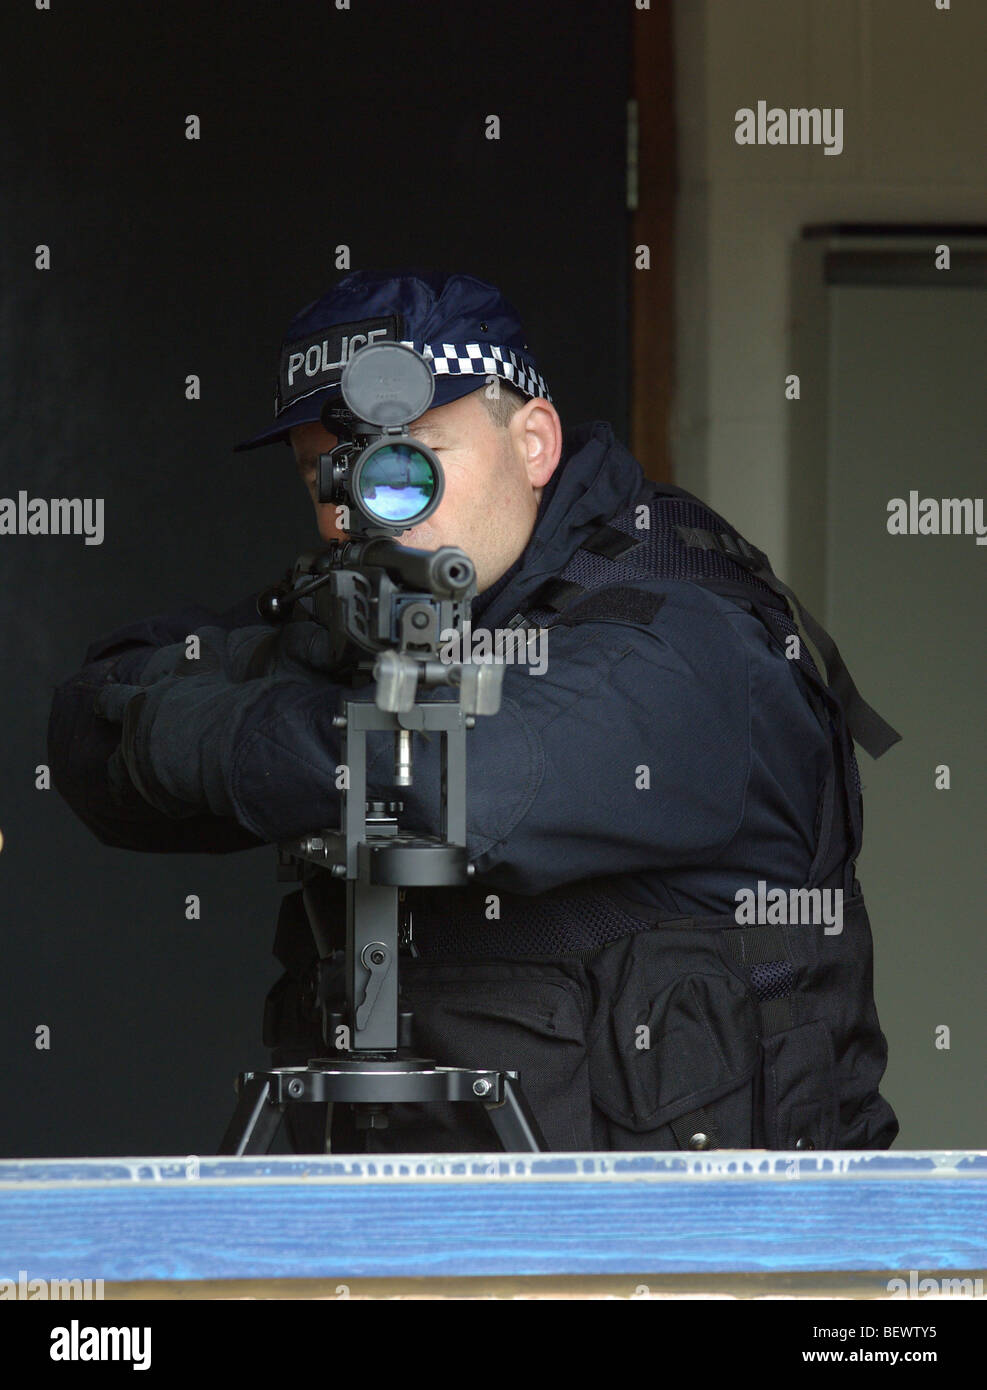 Police sniper Stock Photo